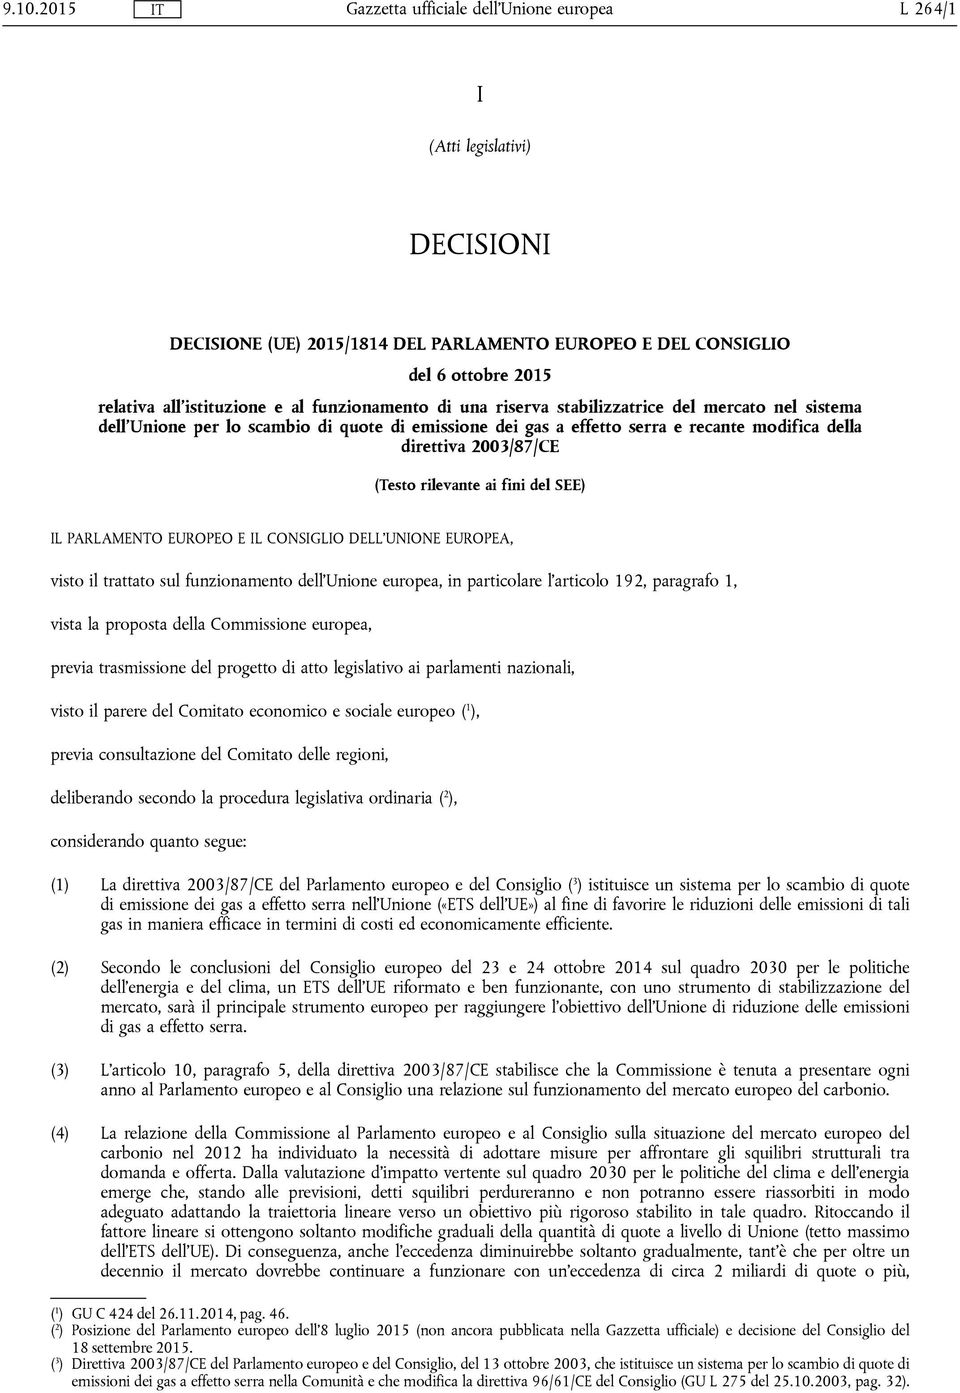 PARLAMENTO EUROPEO E IL CONSIGLIO DELL'UNIONE EUROPEA, visto il trattato sul funzionamento dell'unione europea, in particolare l'articolo 192, paragrafo 1, vista la proposta della Commissione